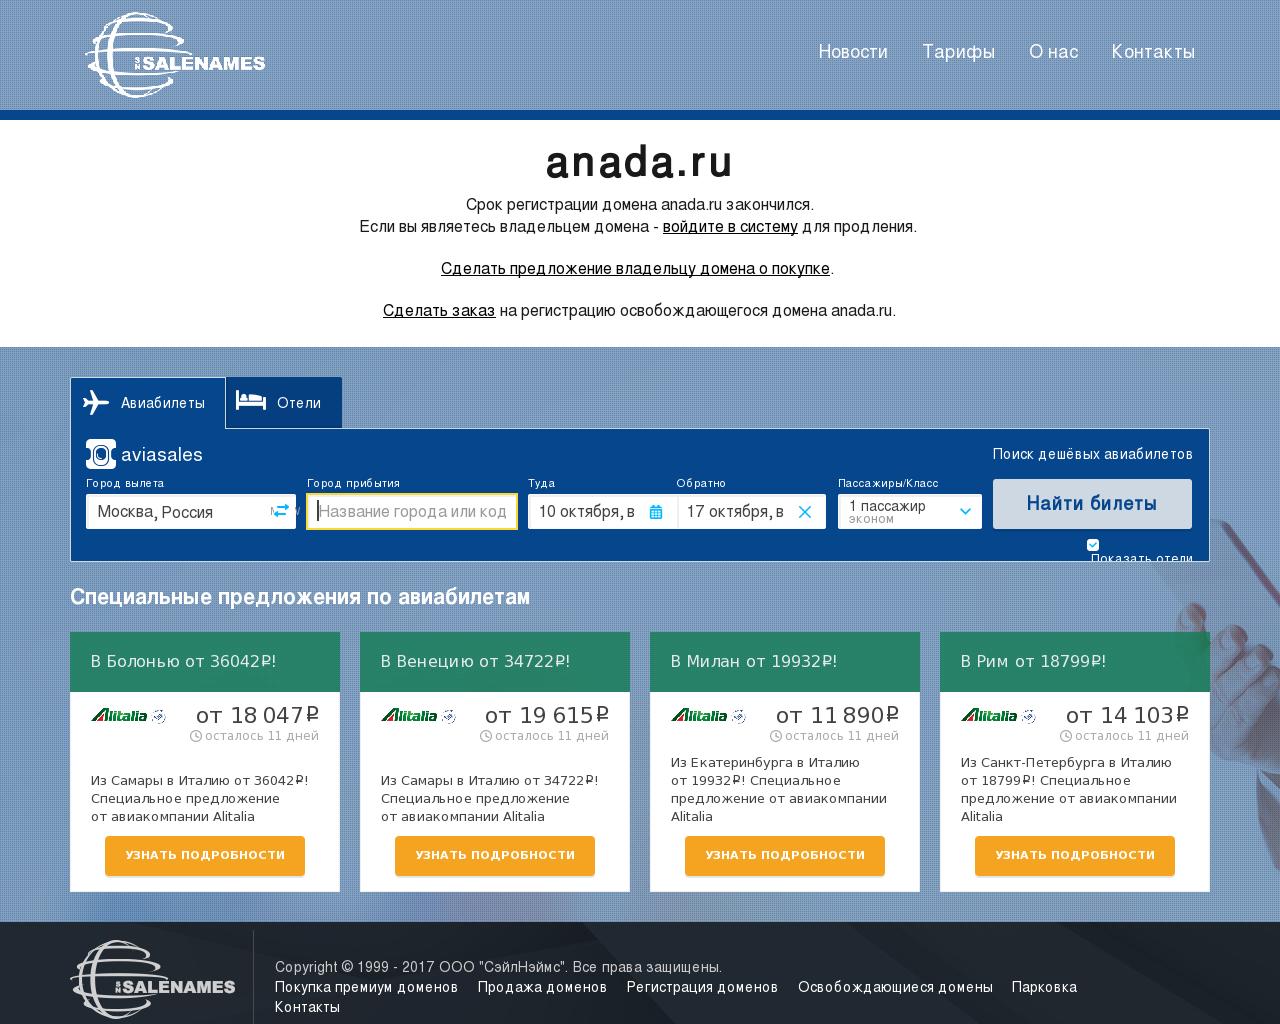 Изображение сайта anada.ru в разрешении 1280x1024